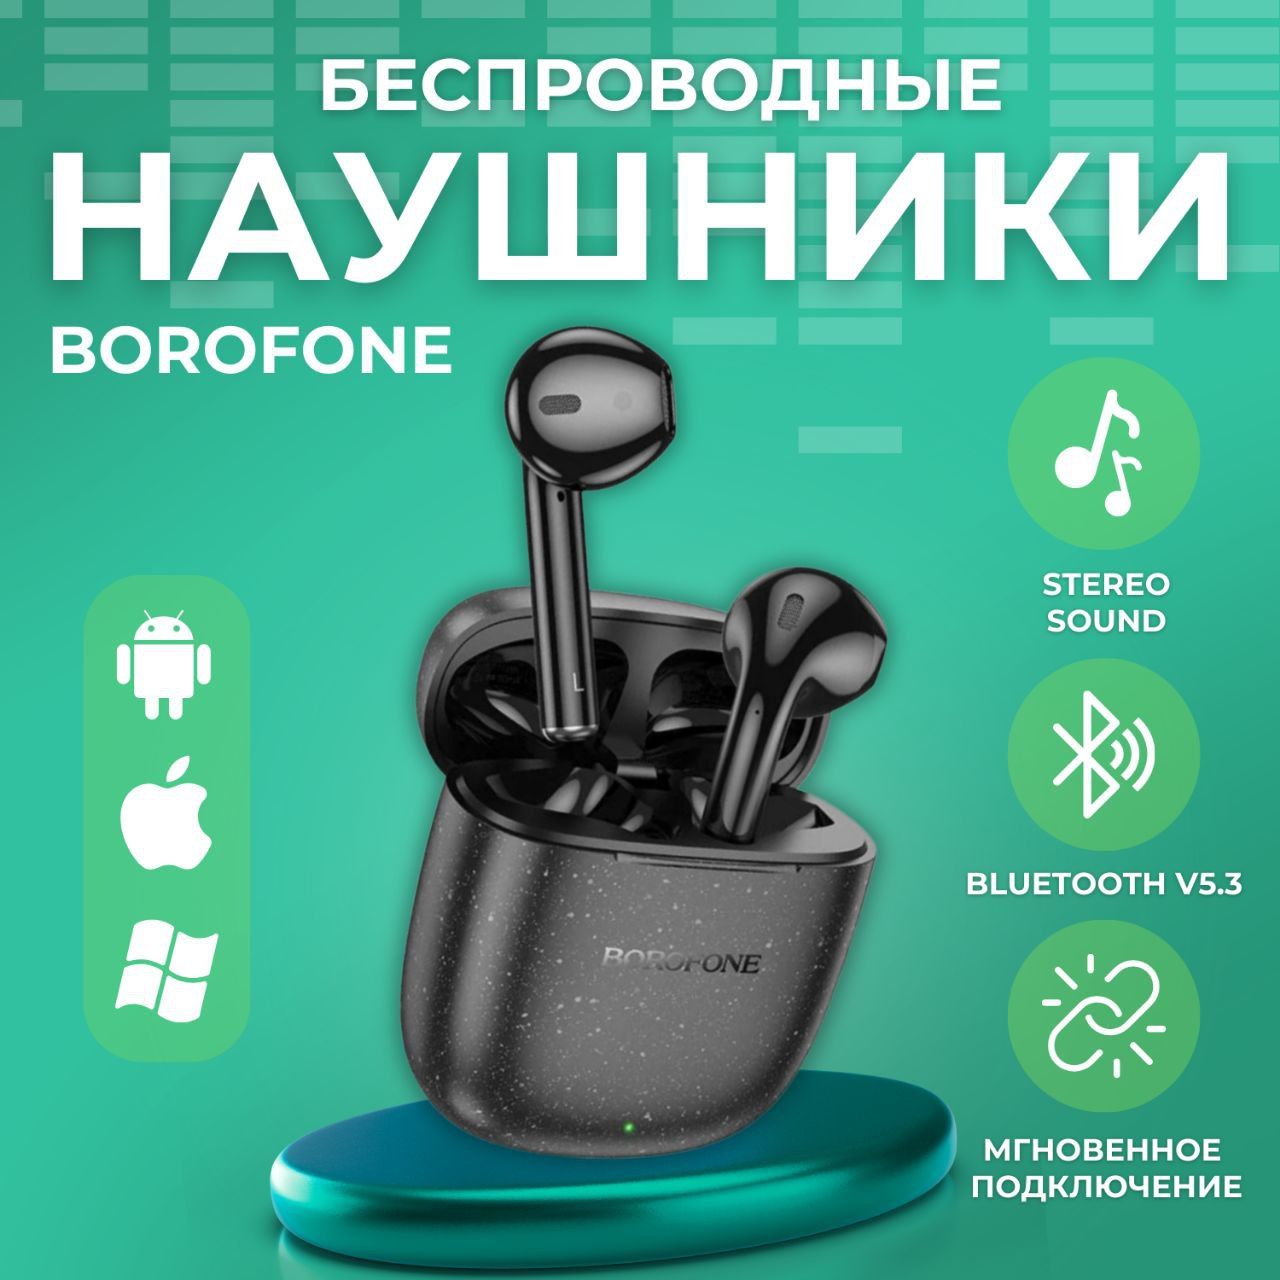 Беспроводныенаушникивкладышисмикрофоном,Bluetooth5.3,длясмартфона,планшета,ноутбукаикомпьютера,Borofone,черные